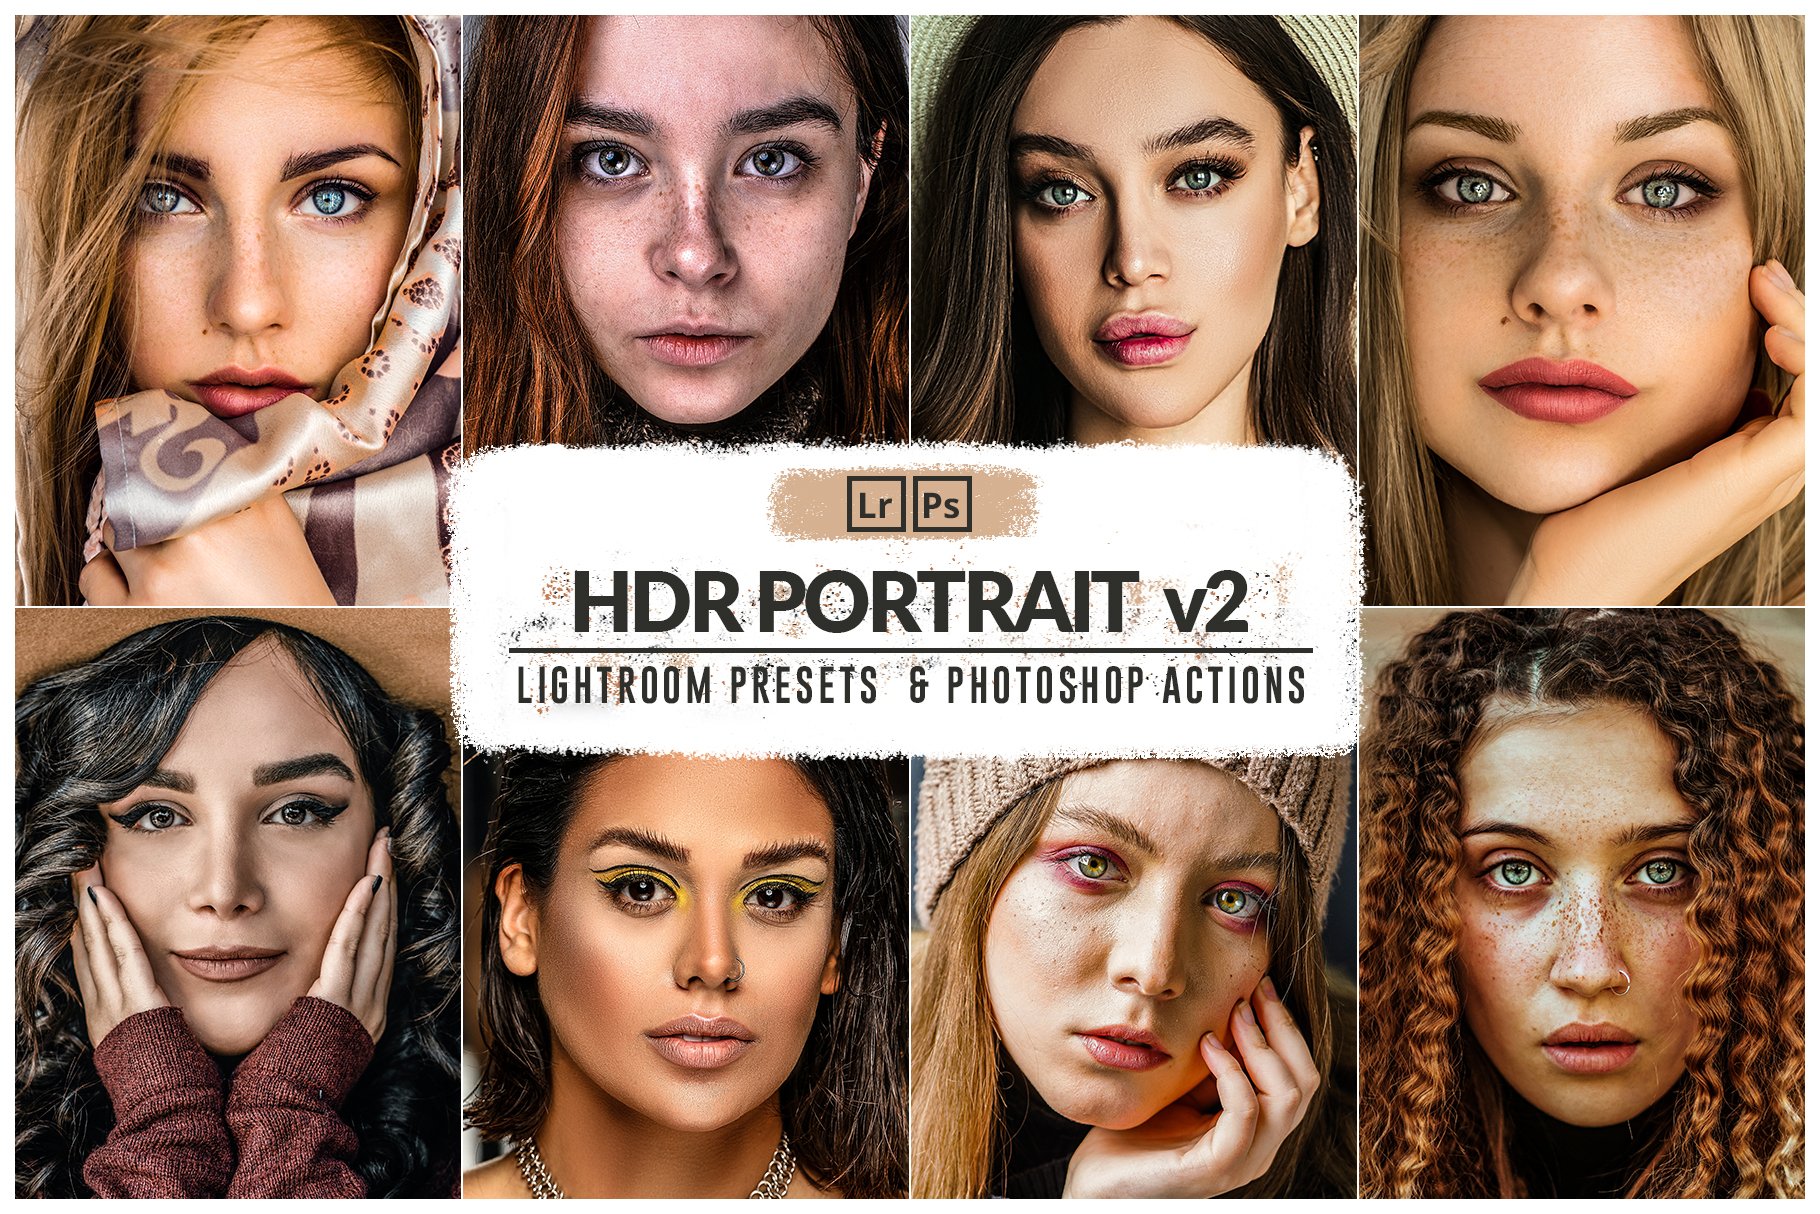 30 HDR Portrait v2 Presets & Actionscover image.